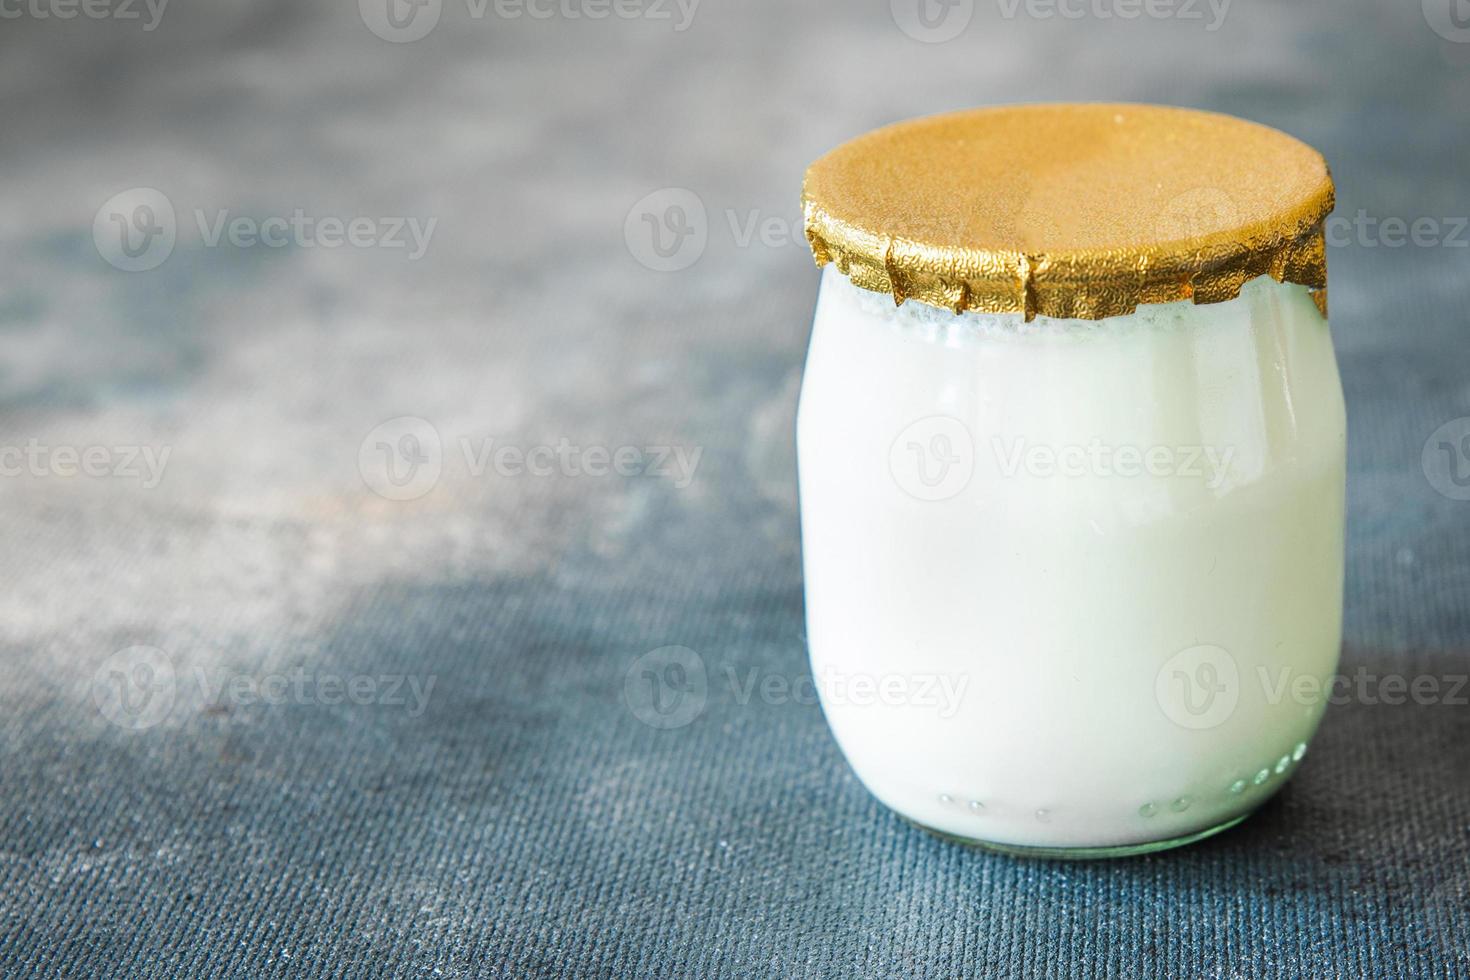 bocal en verre de yaourt repas sain naturel frais snack régime alimentaire sur la table copie espace nourriture photo